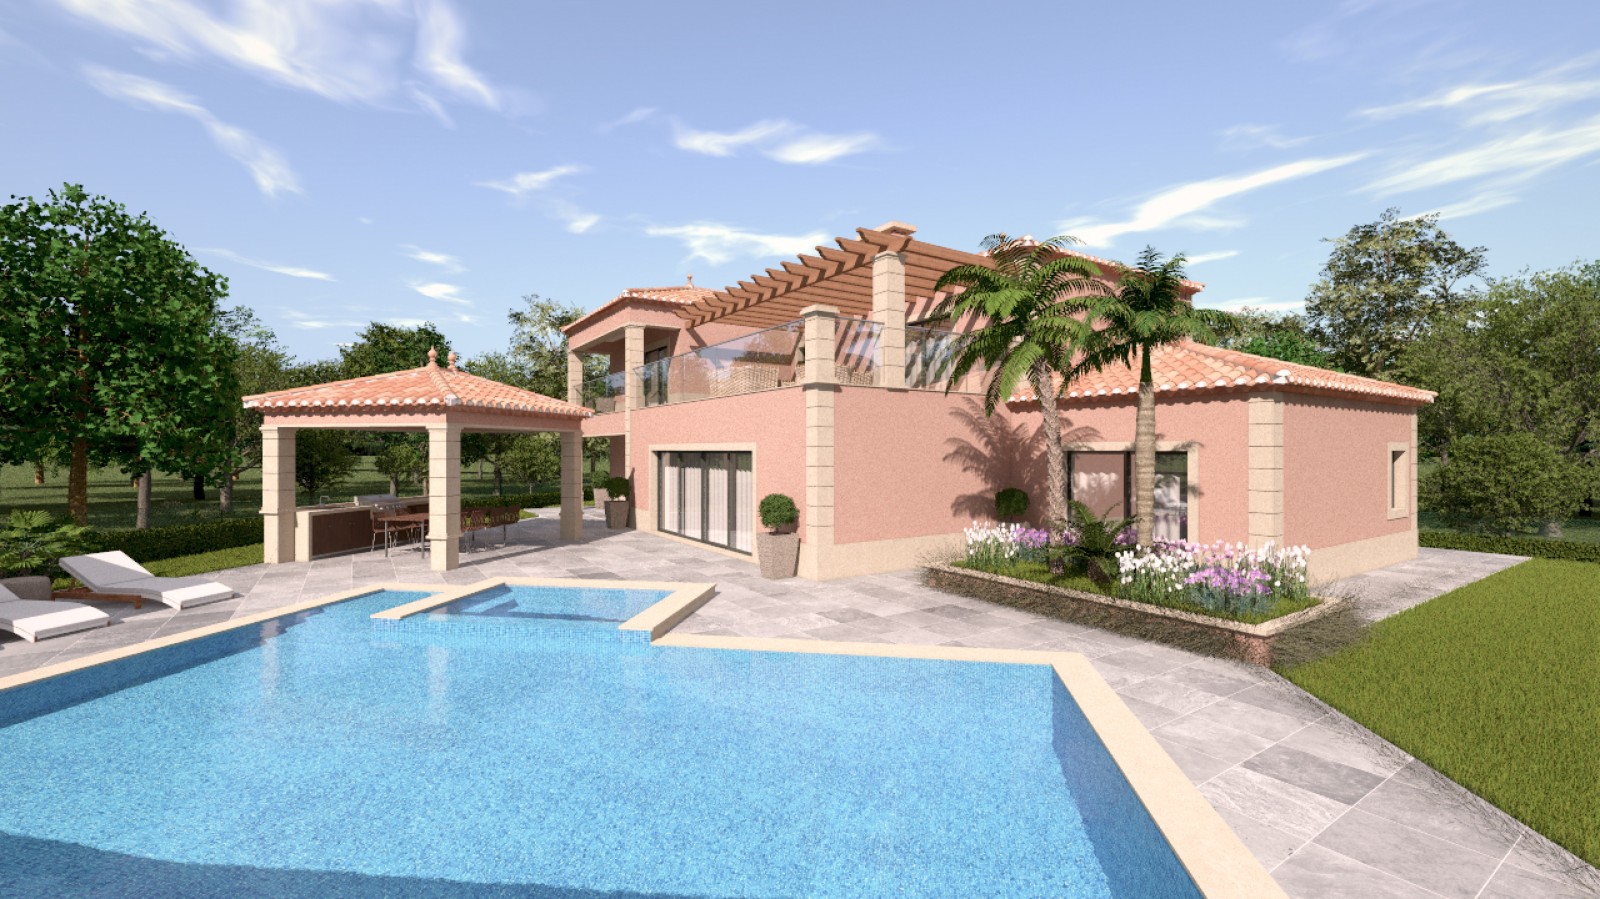 Moradia V4 com piscina, para venda em Portimão, Algarve_231699